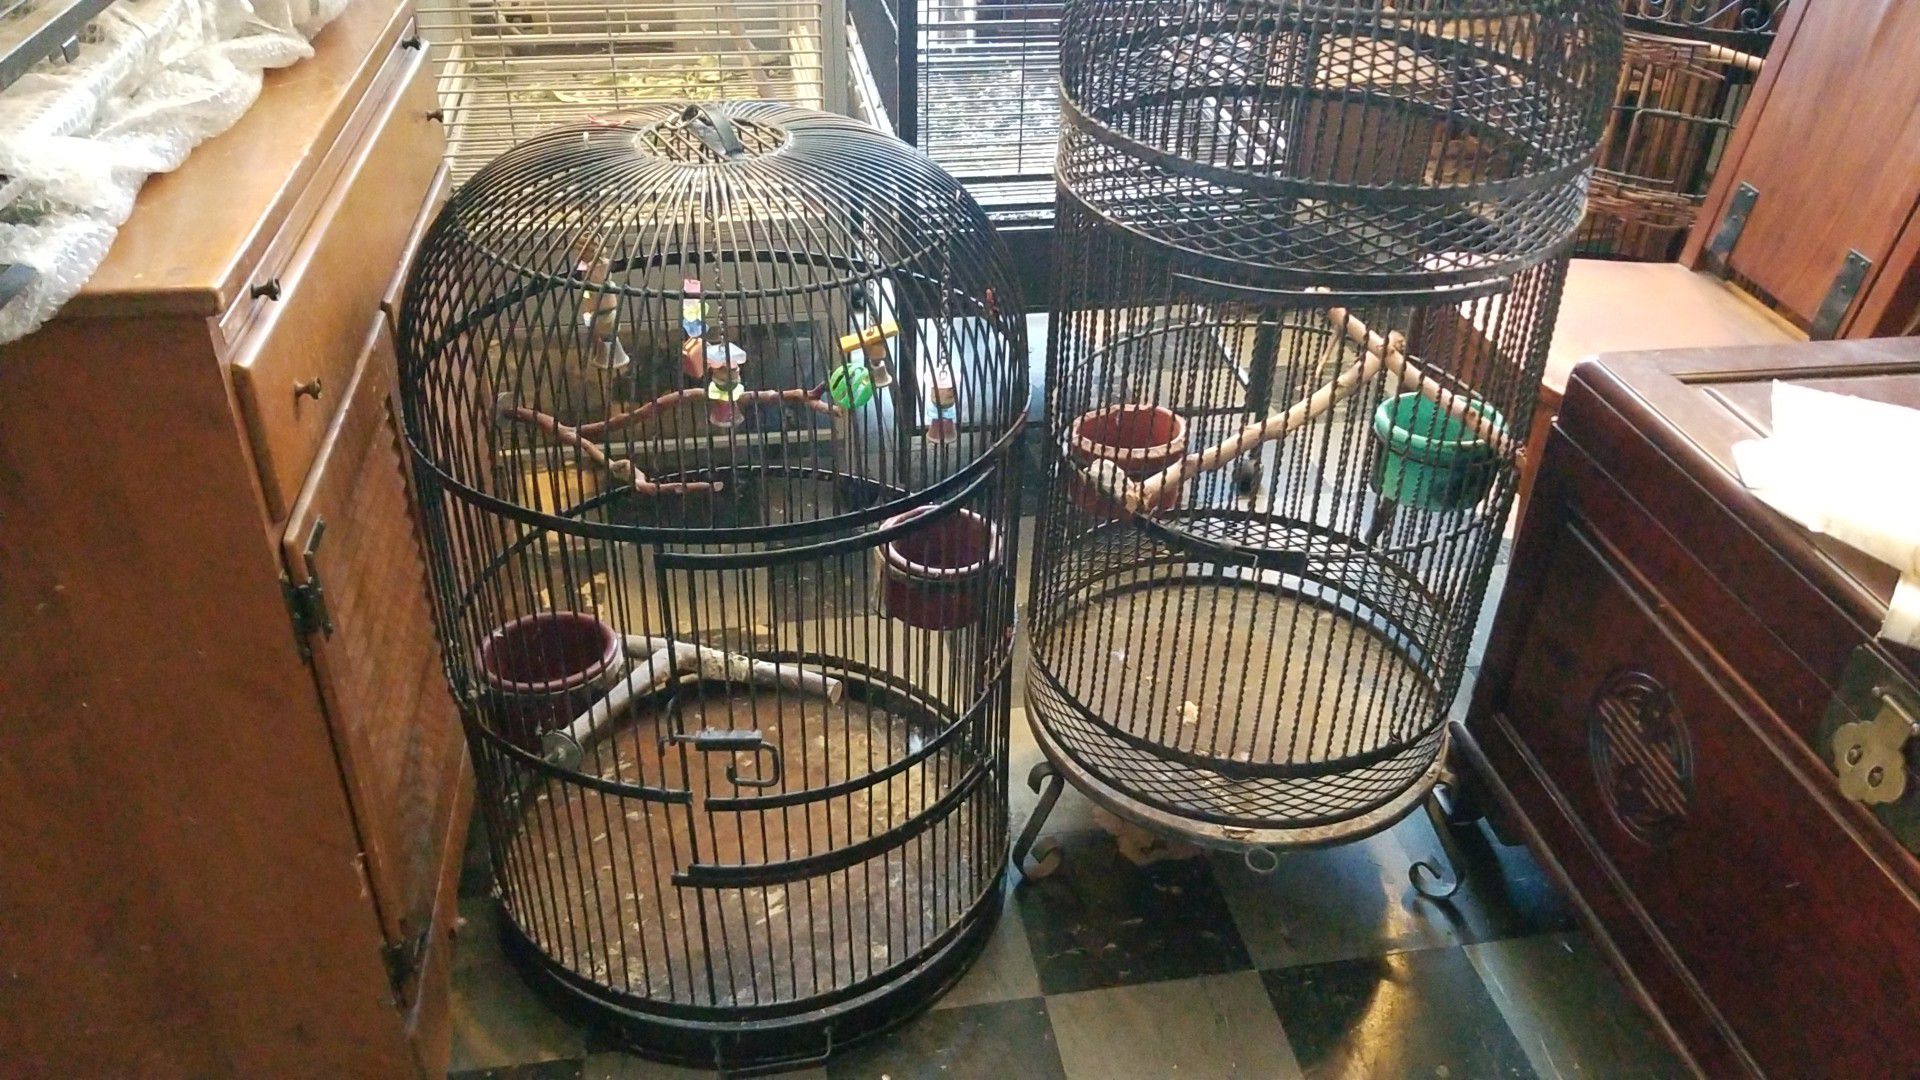 Tweedy bird wrought iron bird cages, Mexico